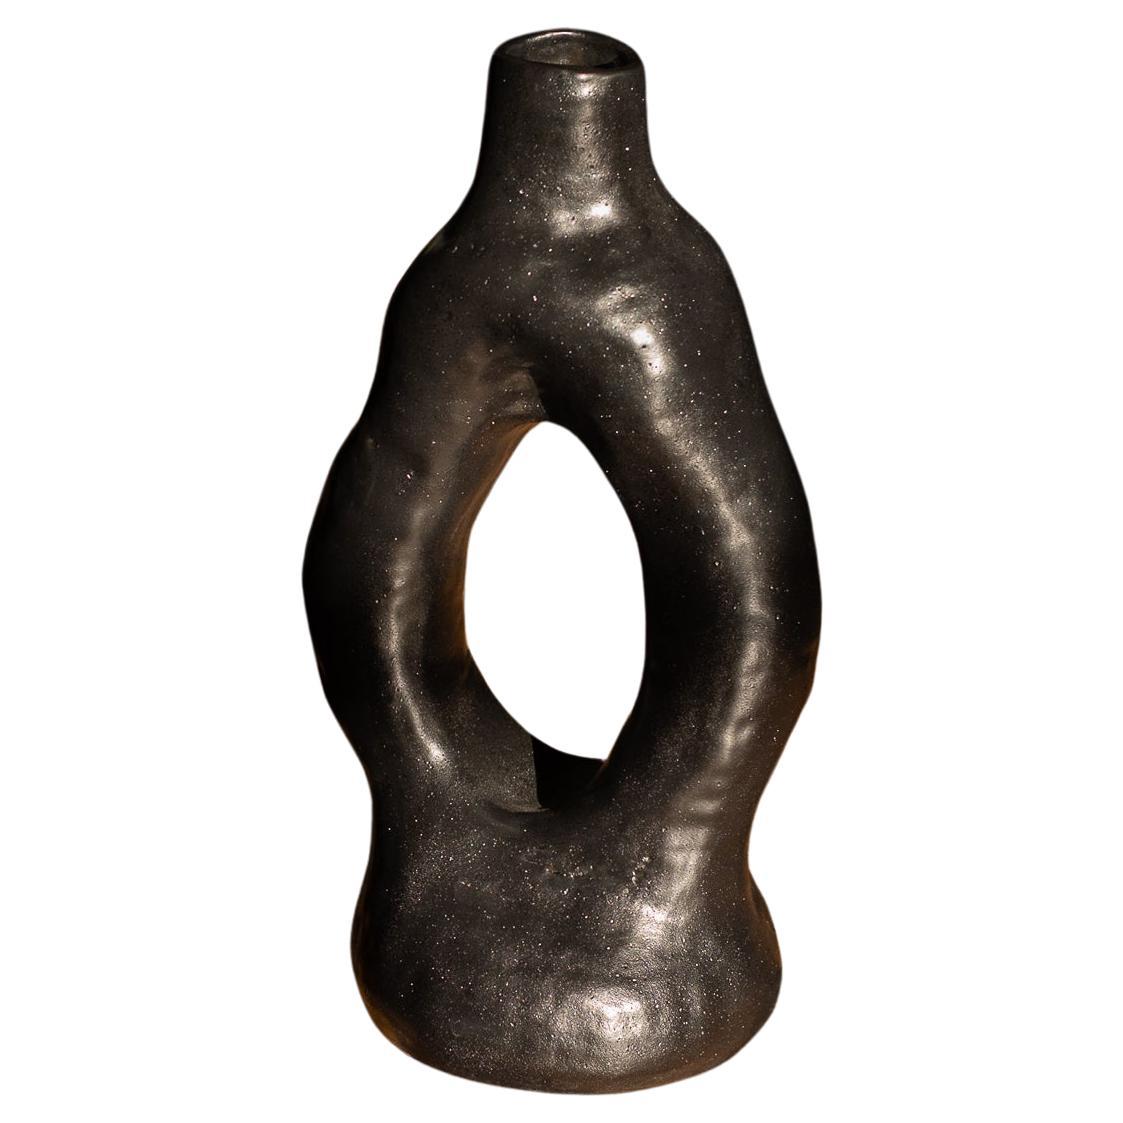 sculpted ceramic vase ALBA N.2 -  black version  For Sale